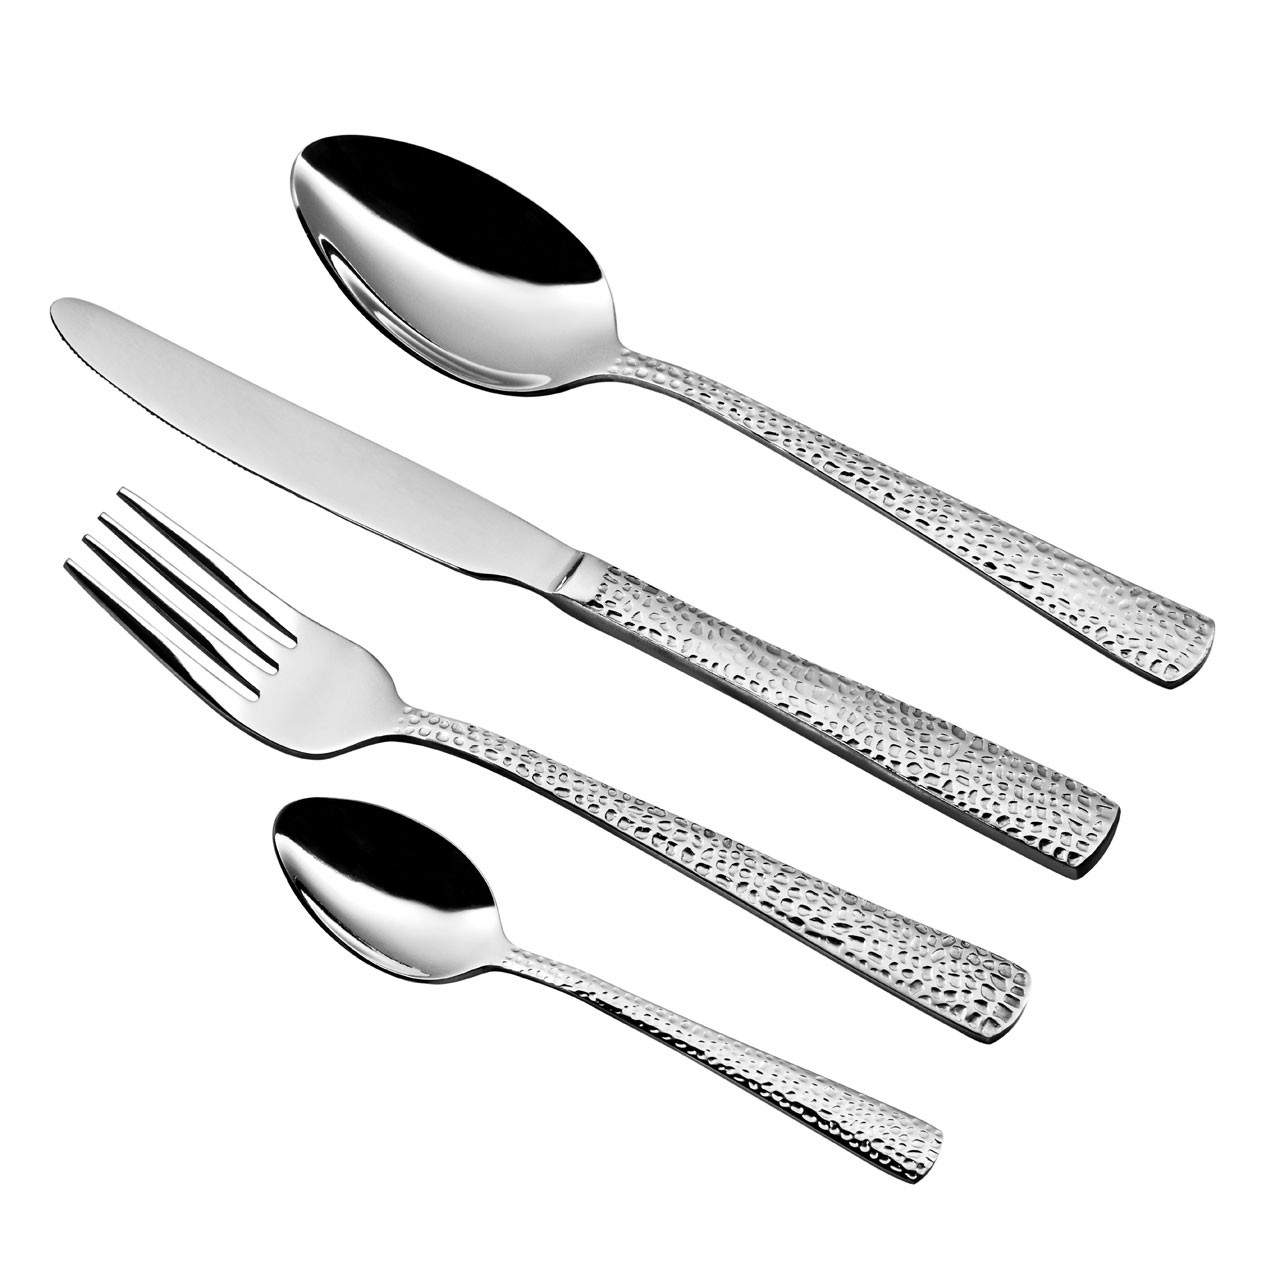 Hammered Cutlery Set - 24-Piece